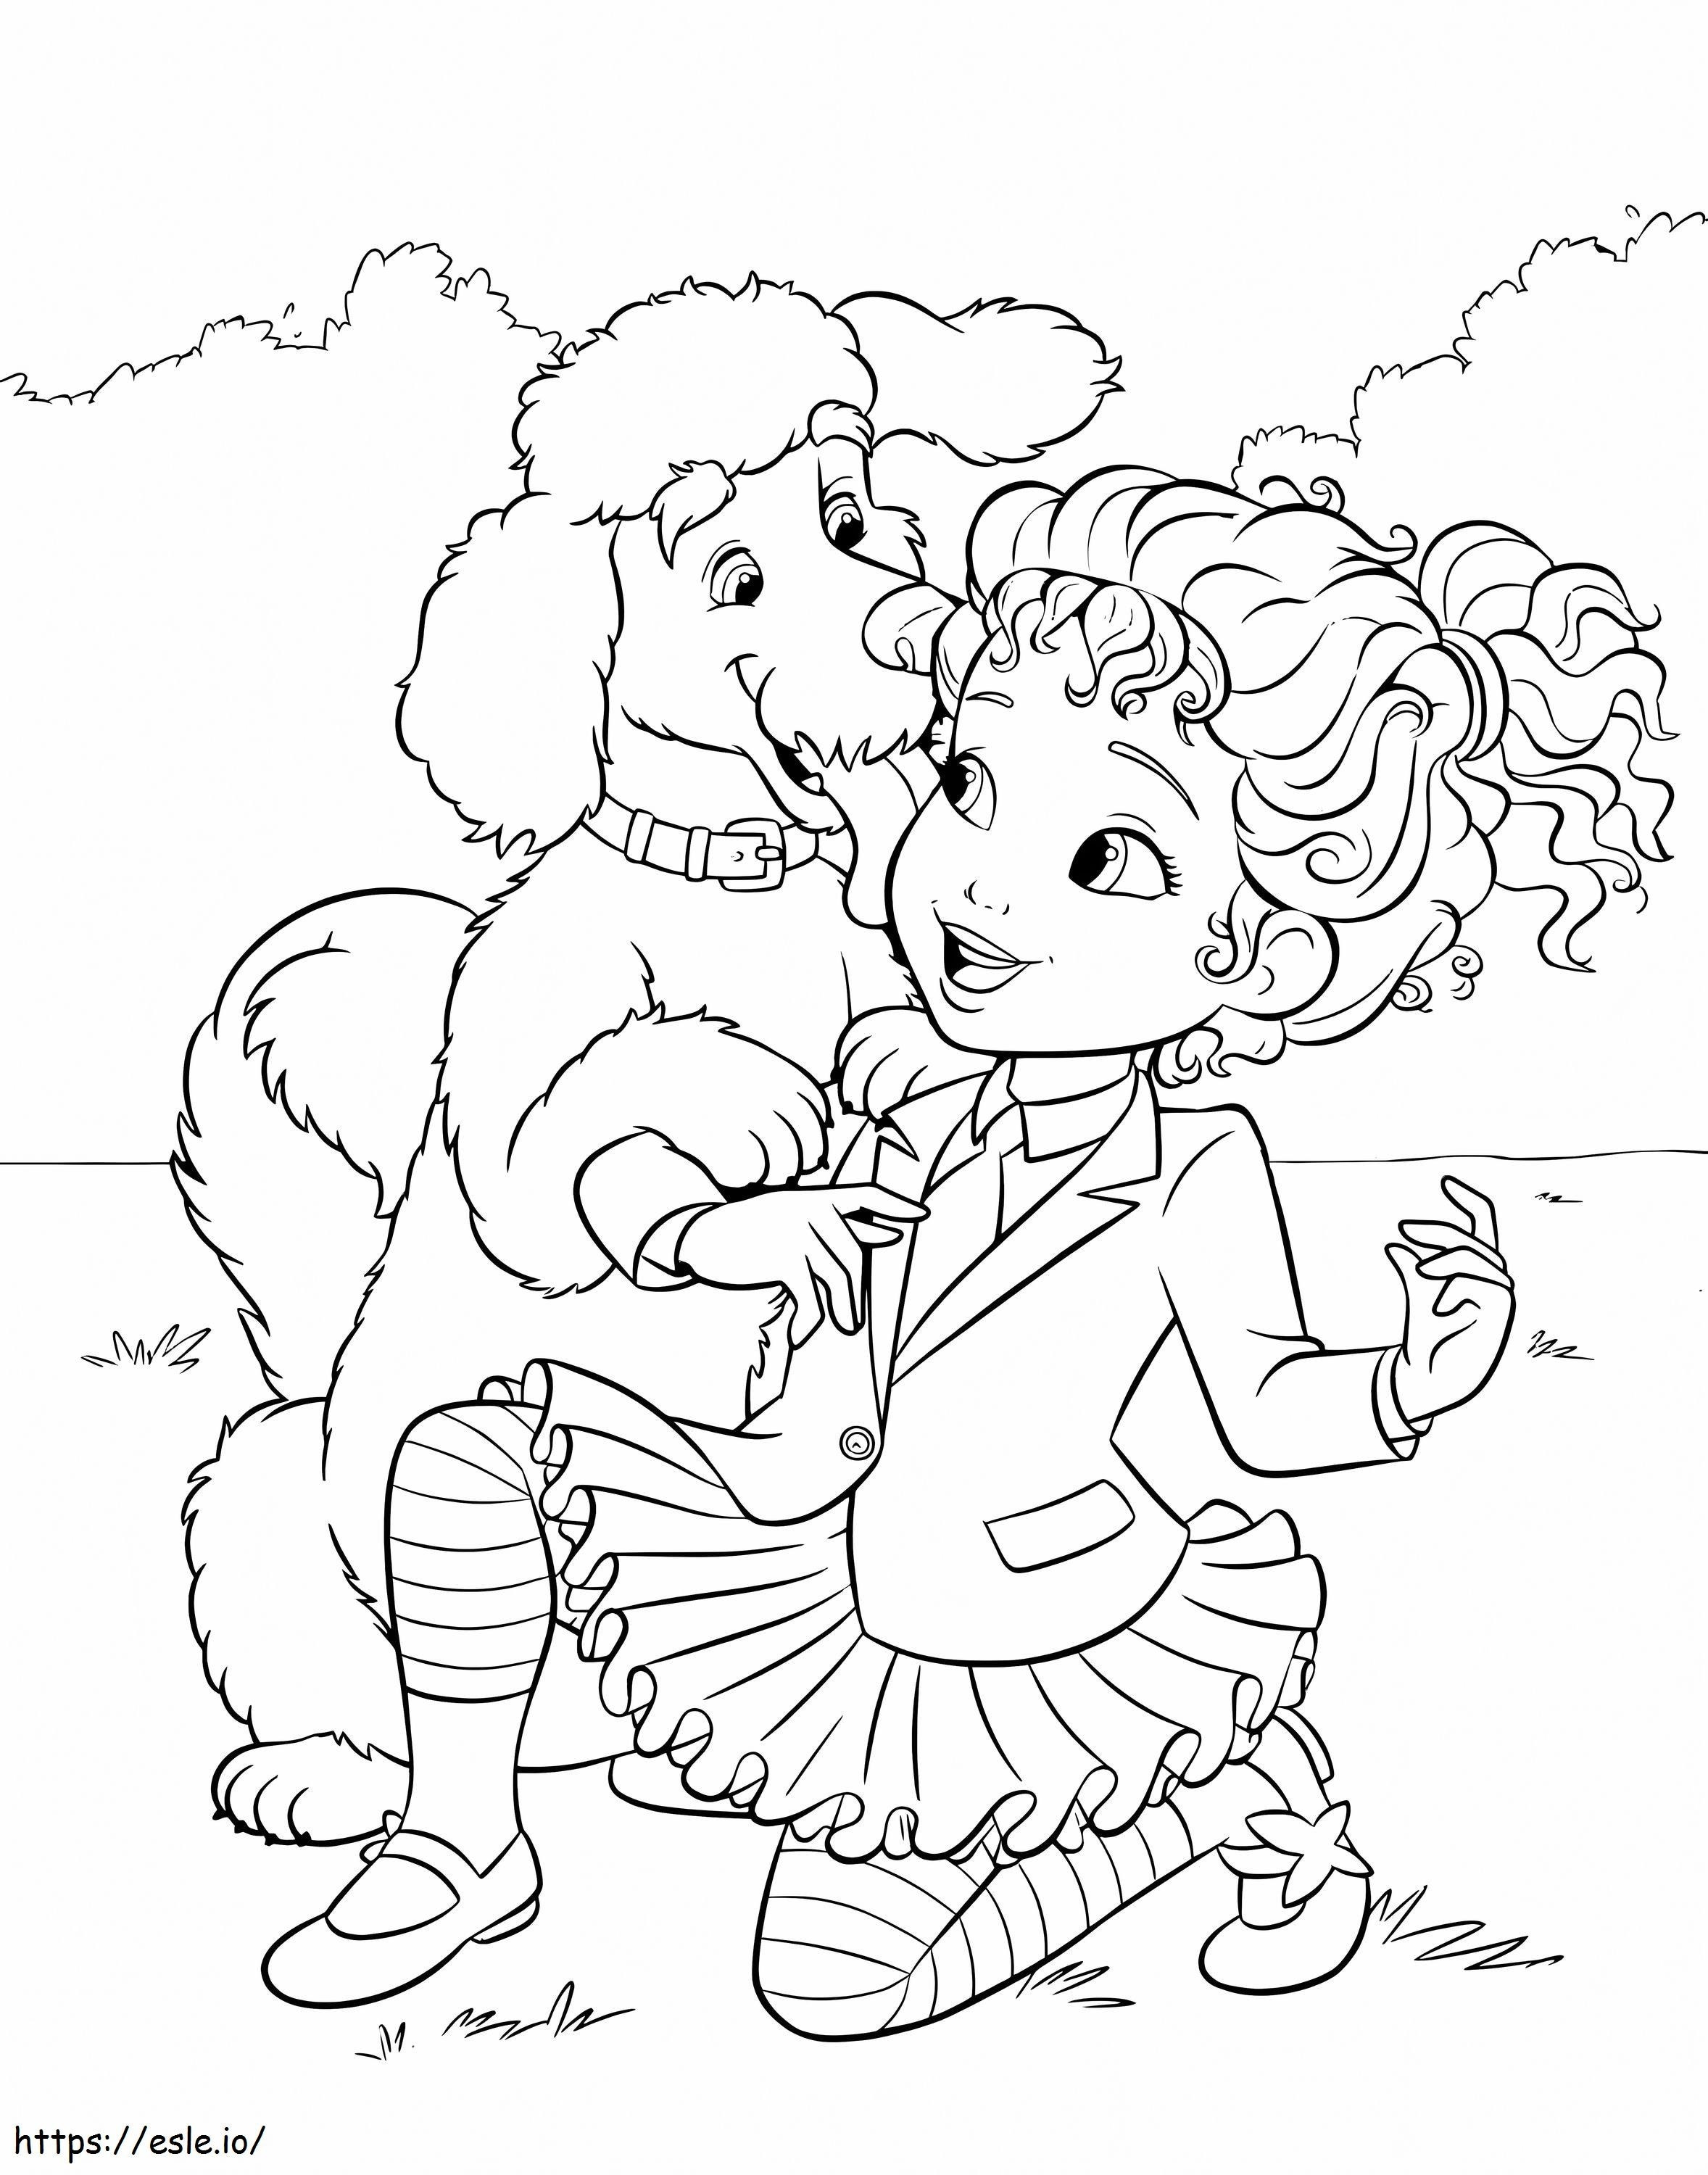 Pies i fantazyjna Nancy kolorowanka